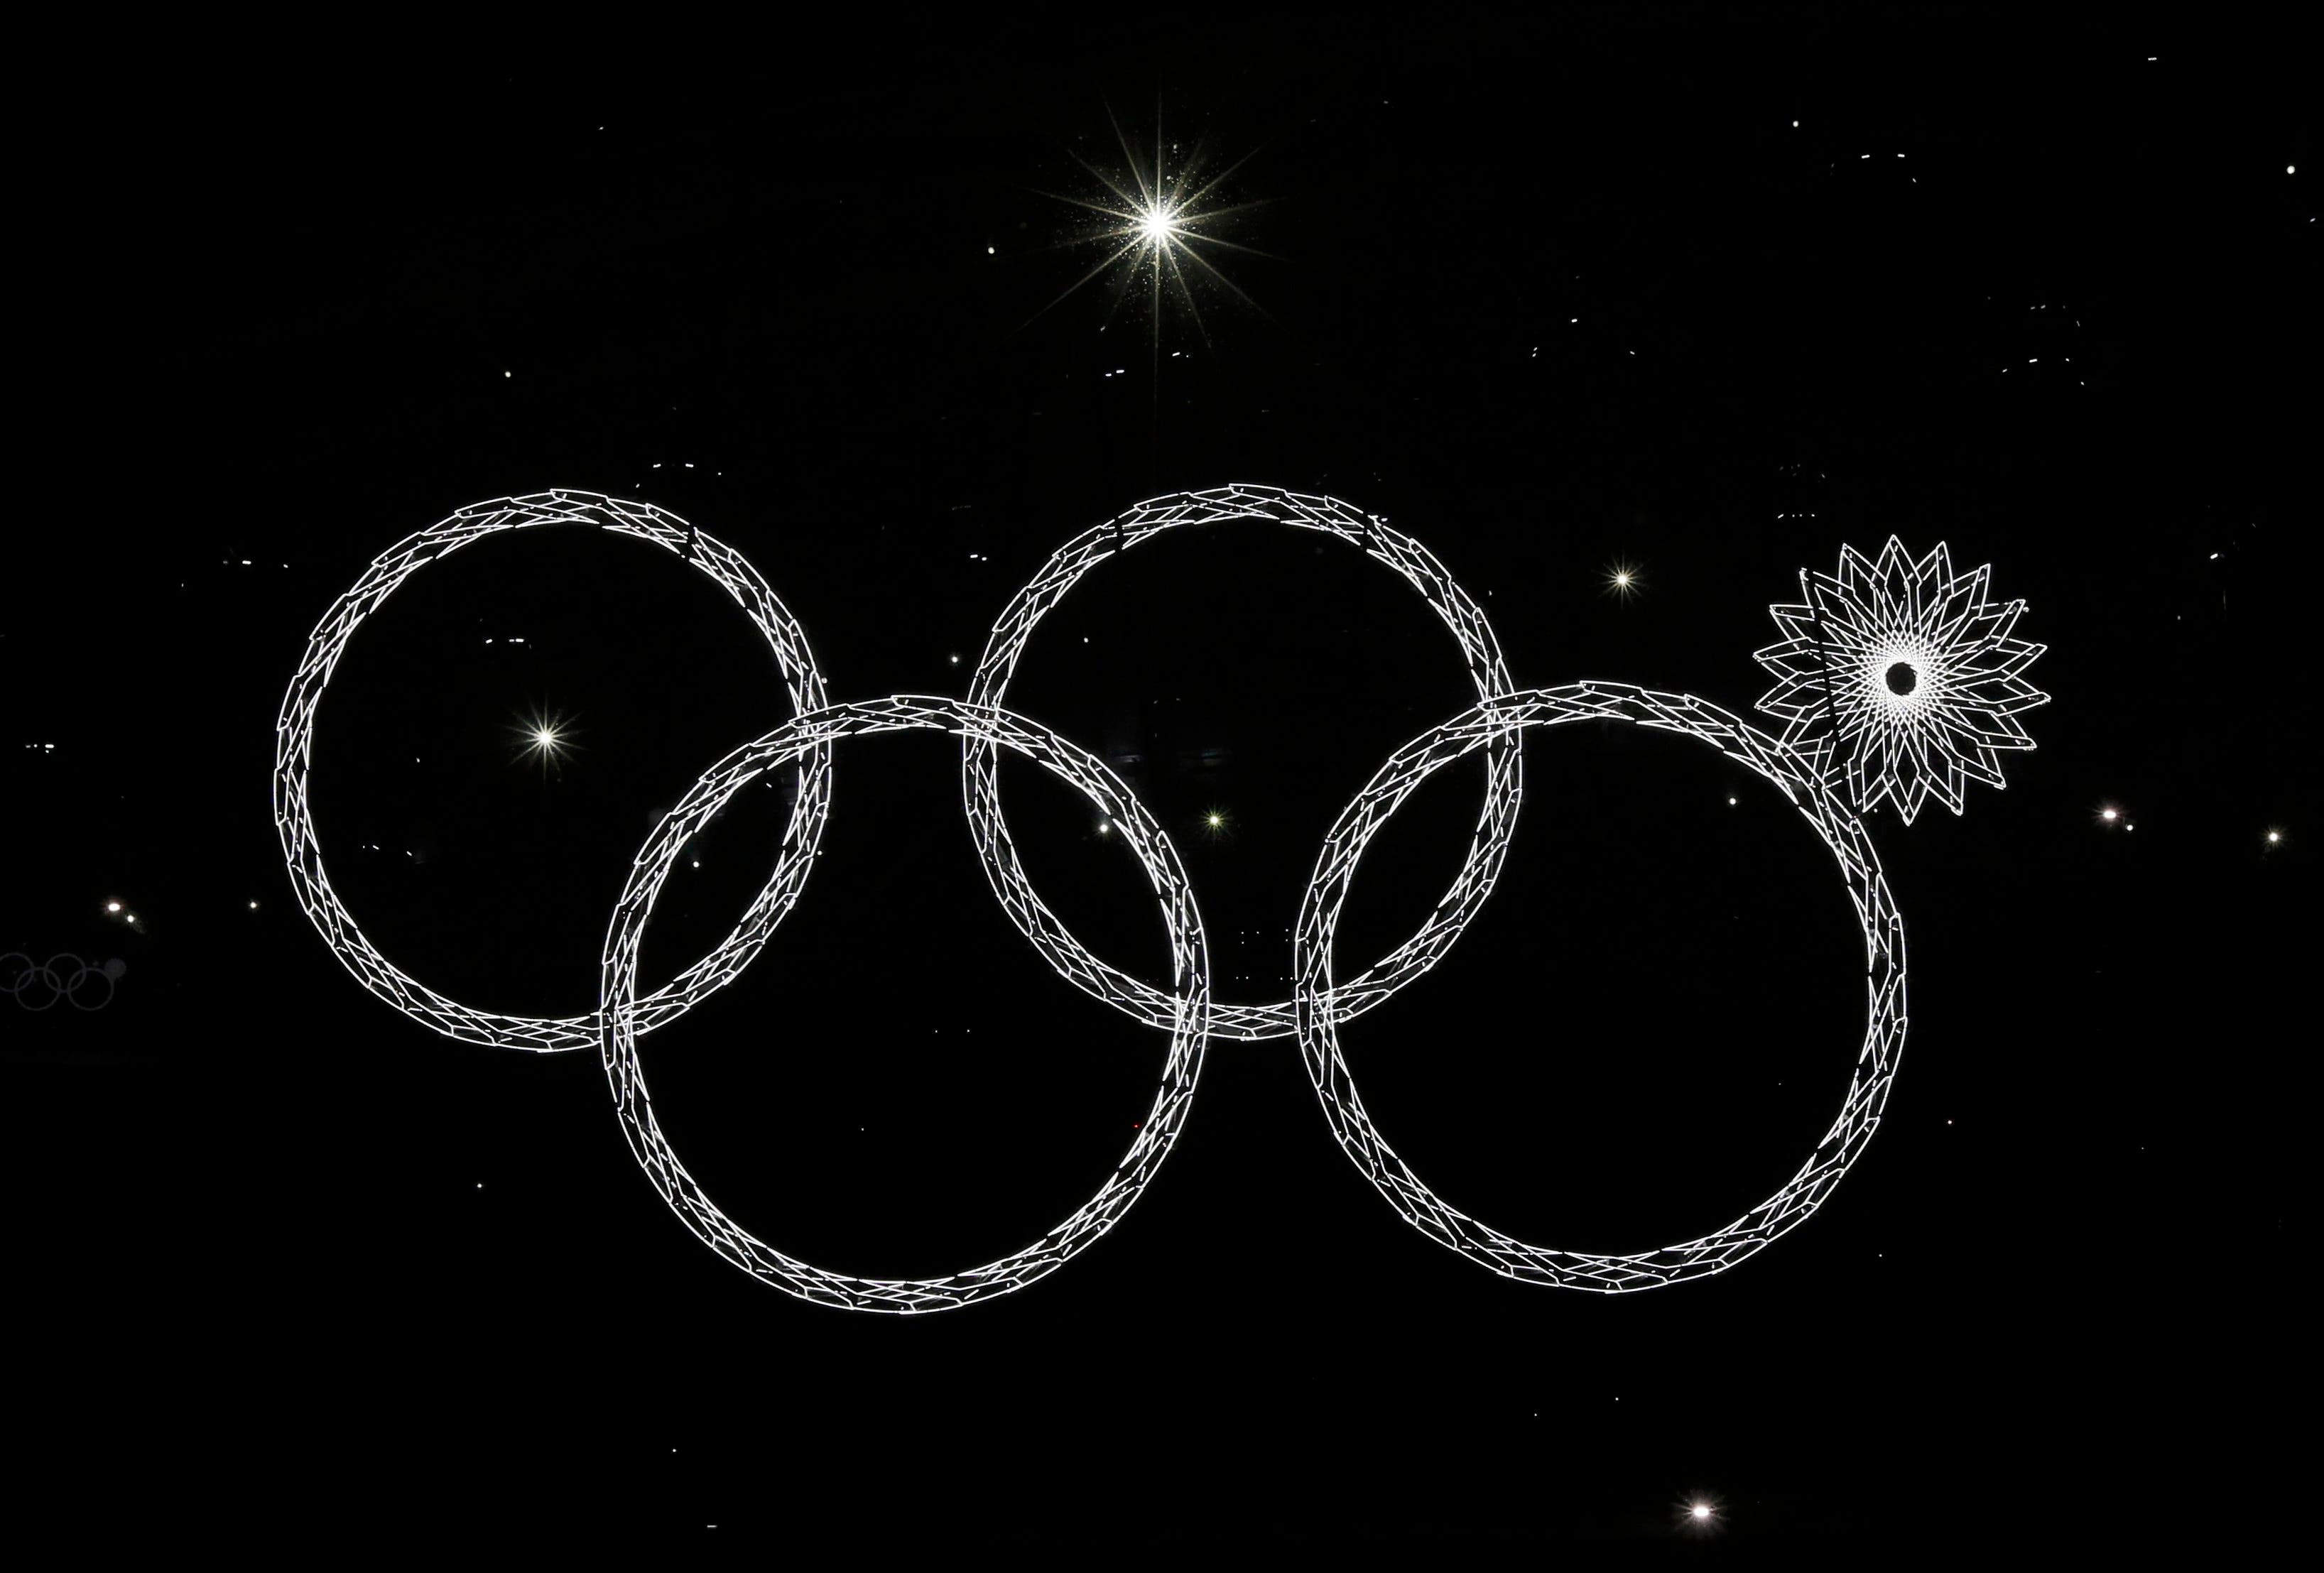 Sochi Olympics opening 